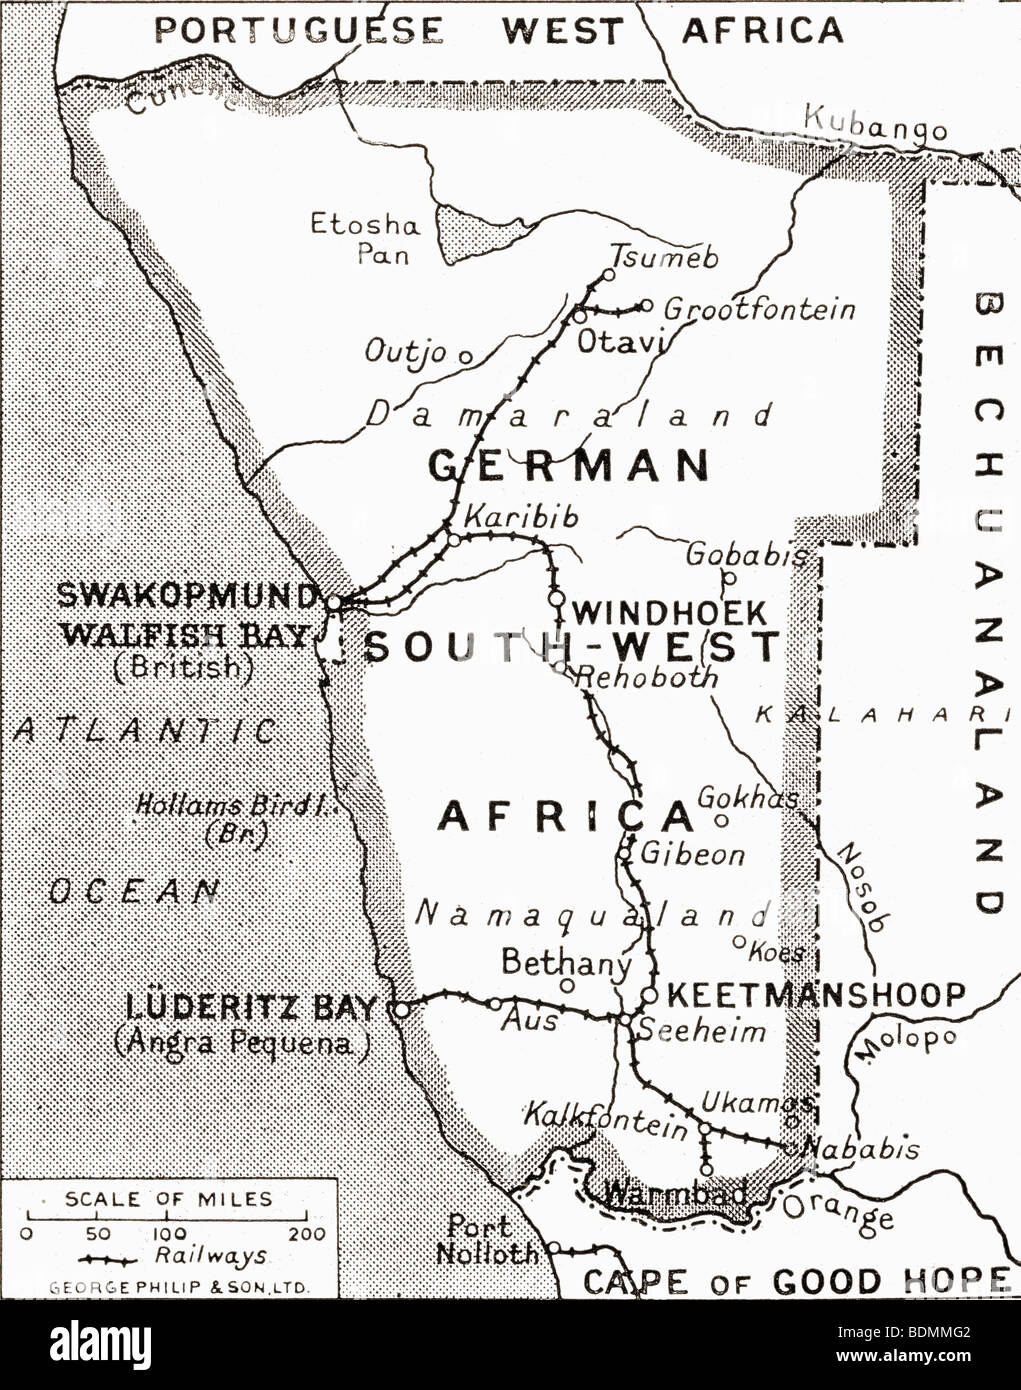 Mappa di tedesco Africa del sud-ovest, scena di uno di Gran Bretagna campagne, che mostrano importanti Walfish Bay e Keetmanshoop. Foto Stock